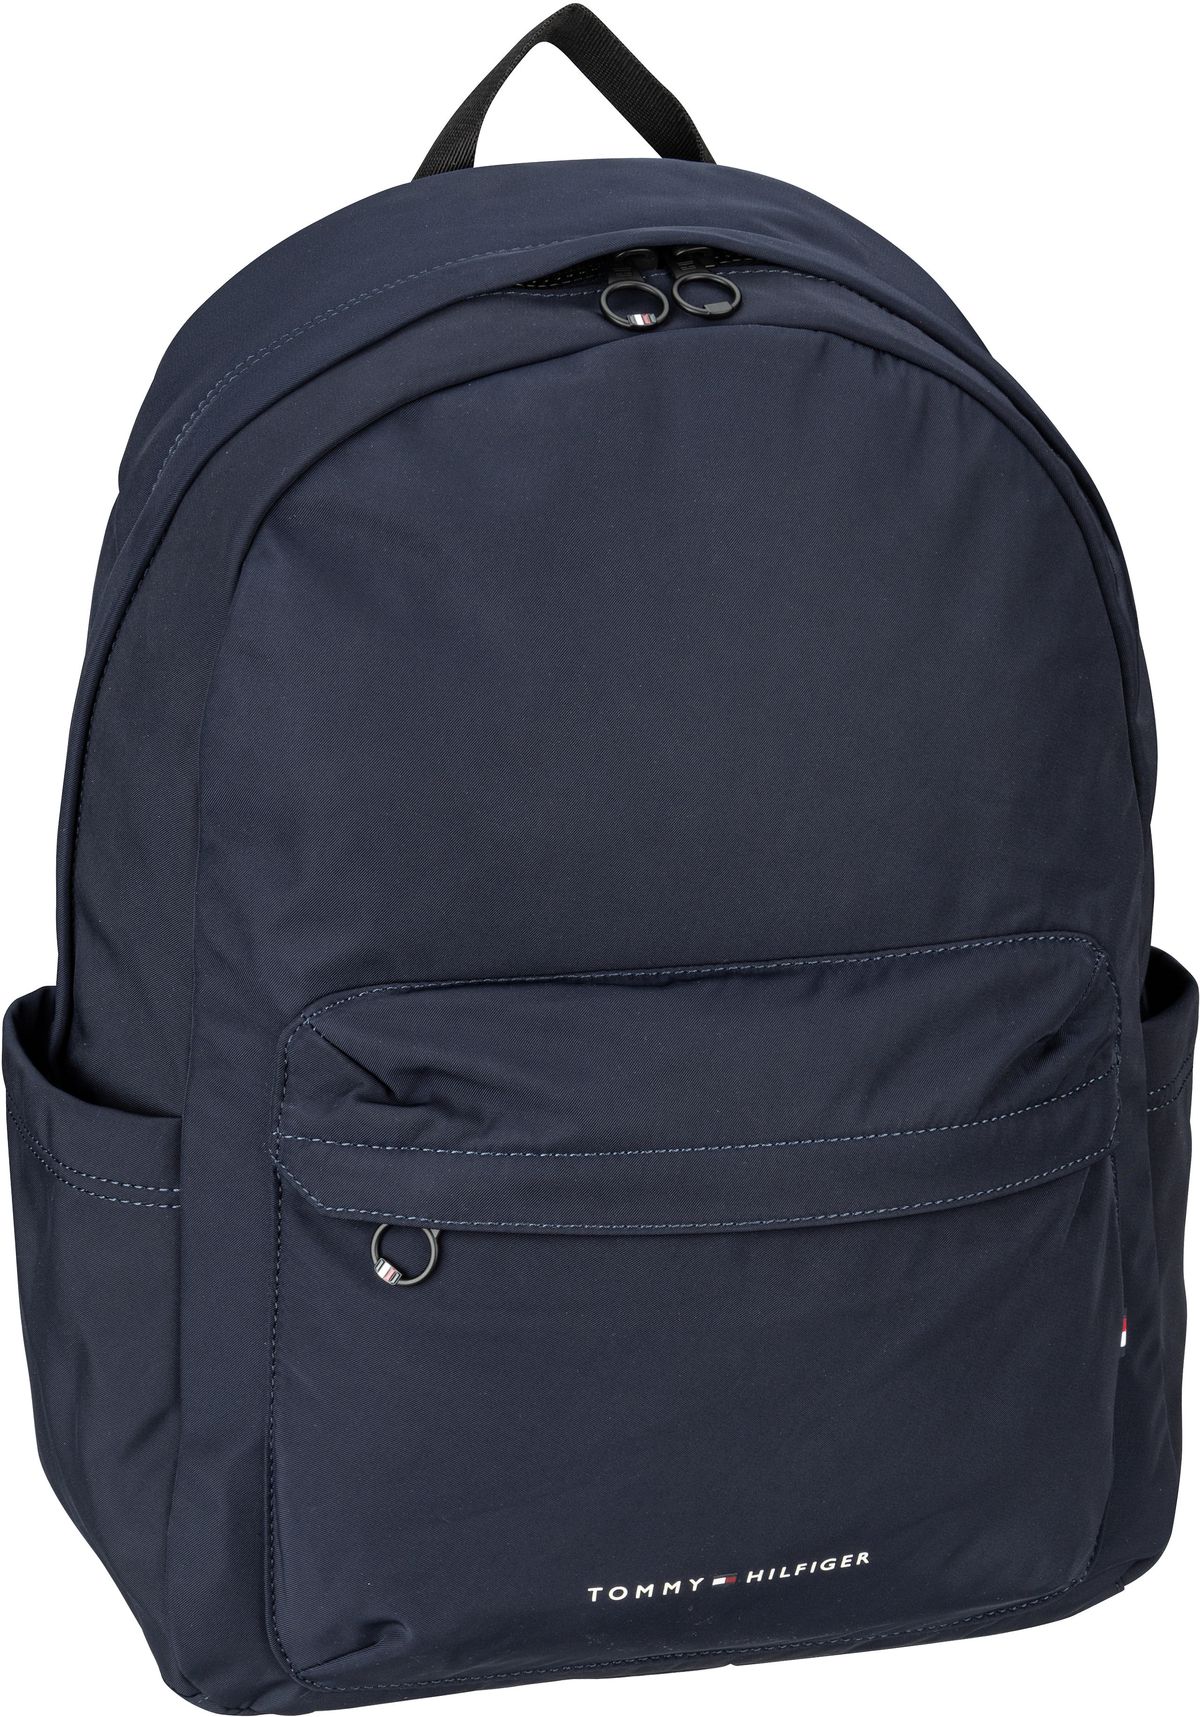 Tommy Hilfiger TH Skyline Backpack PSP24  in Navy (14.3 Liter), Rucksack / Backpack